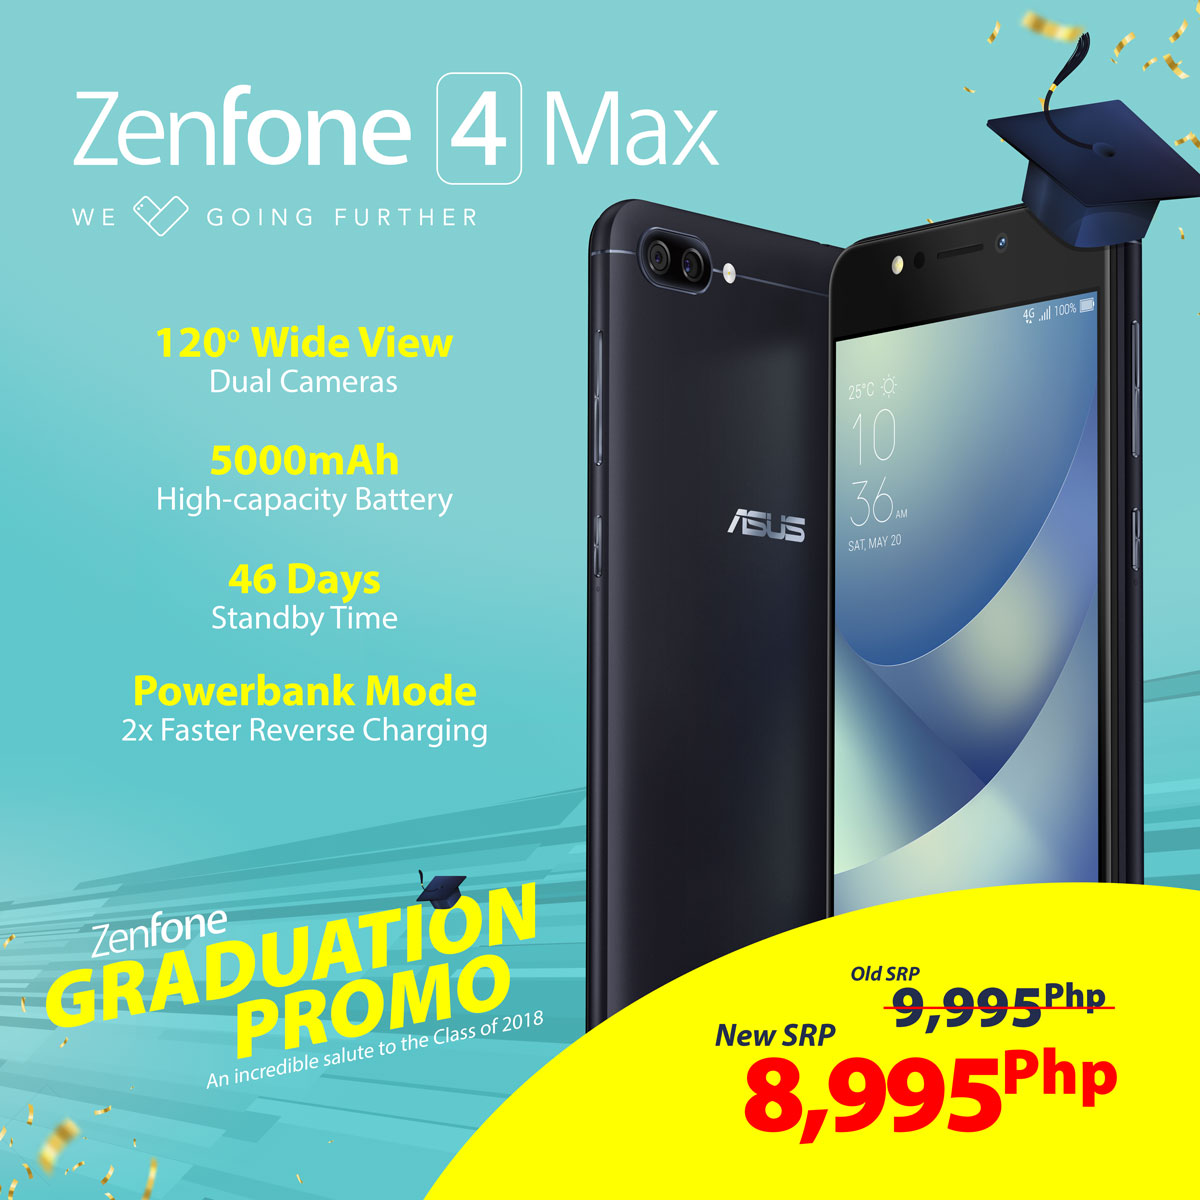 • Asus Launches Zenfone Graduation Promo